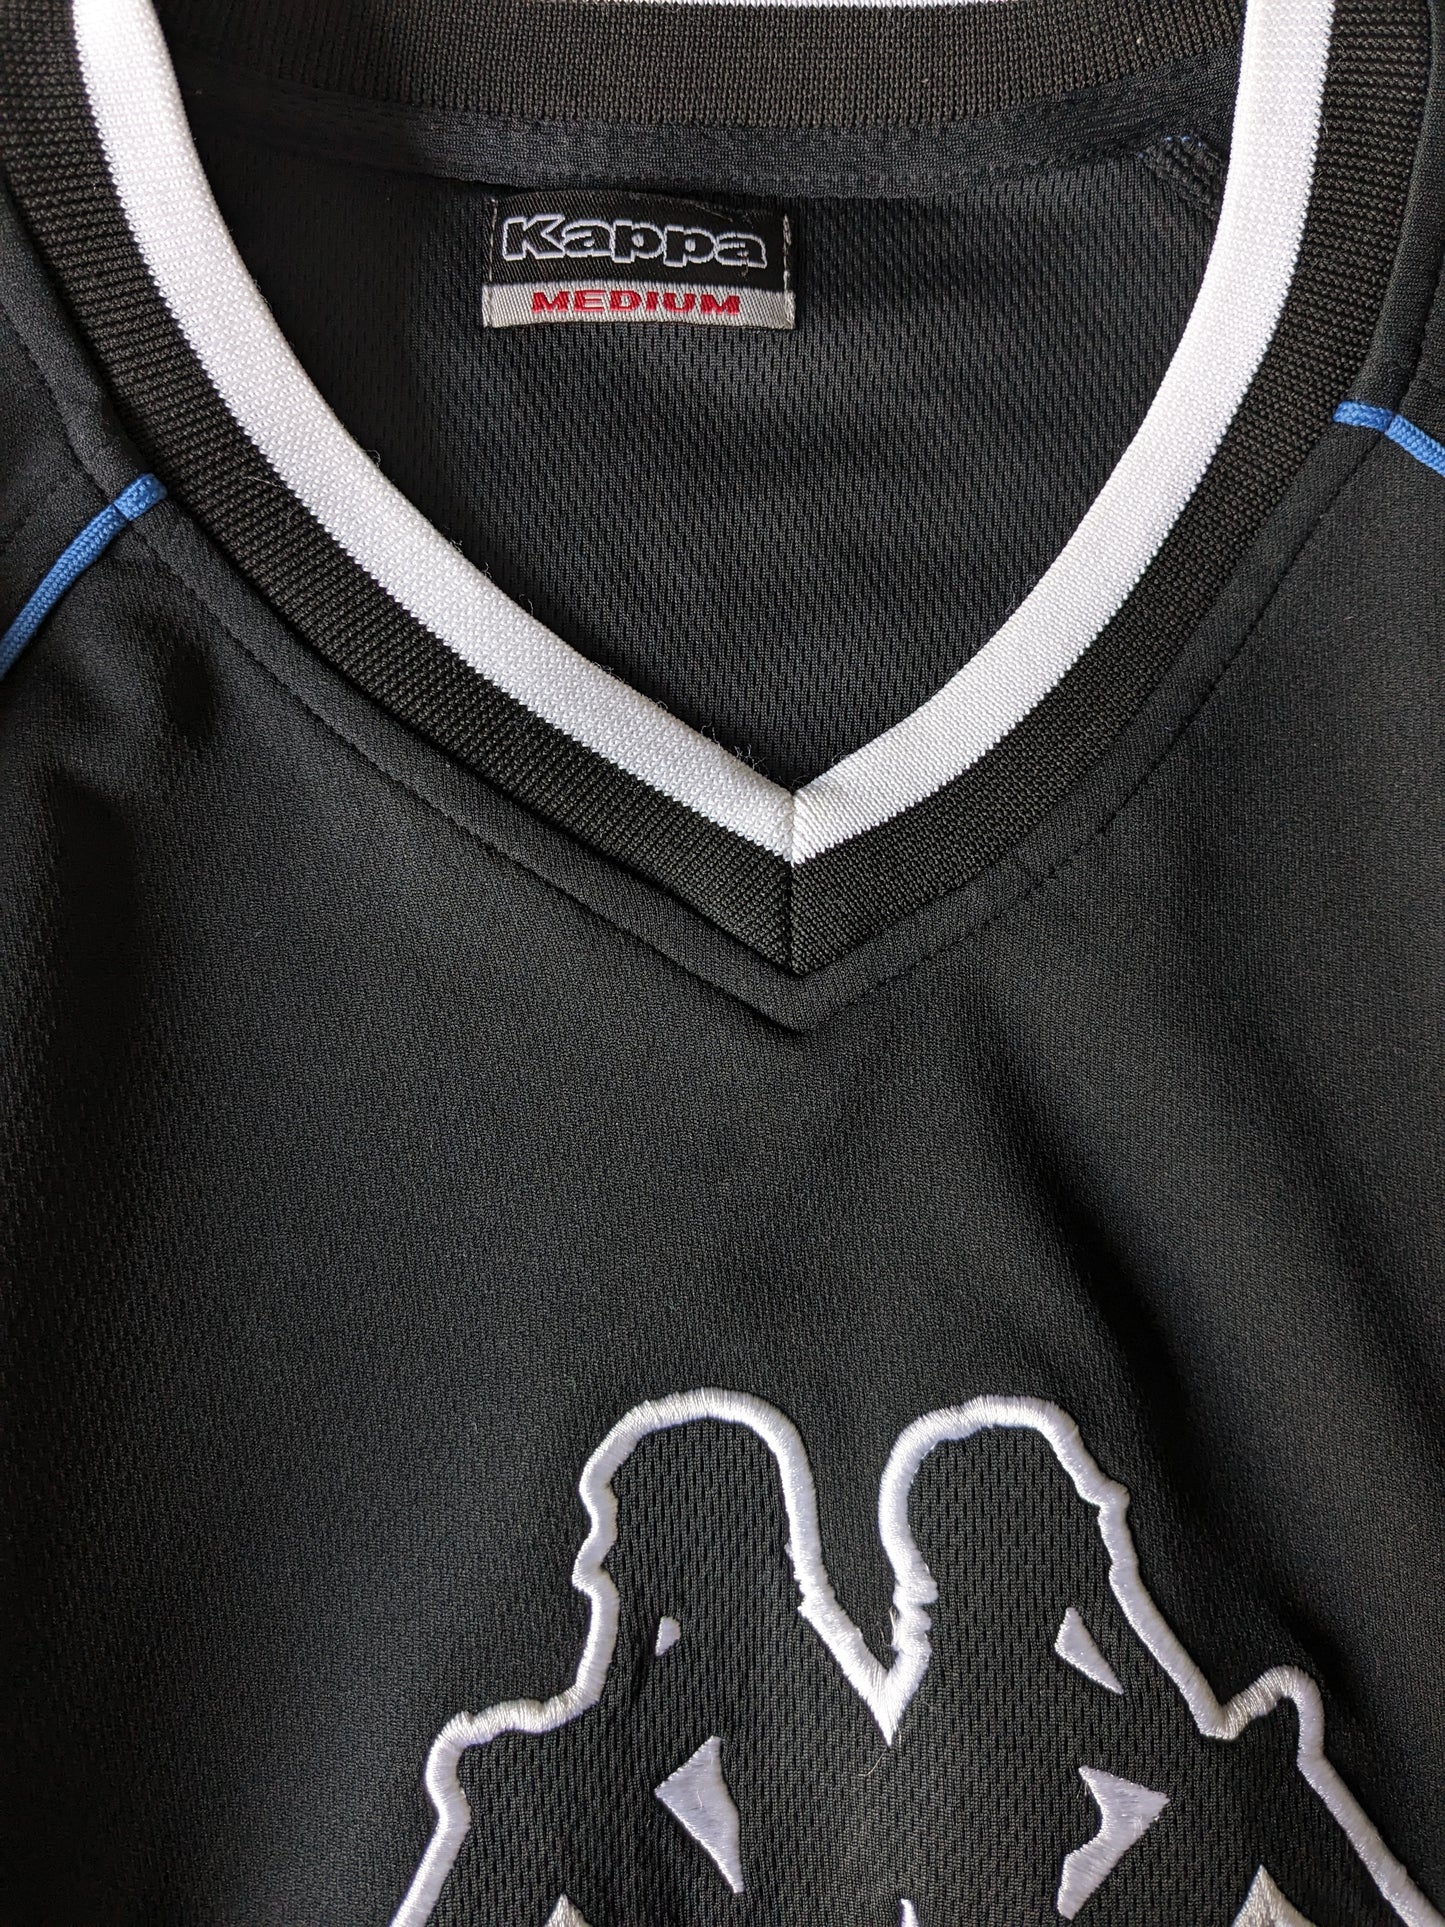 Chemise de sport kappa vintage avec col en V. Couleur noire. Taille M / L.